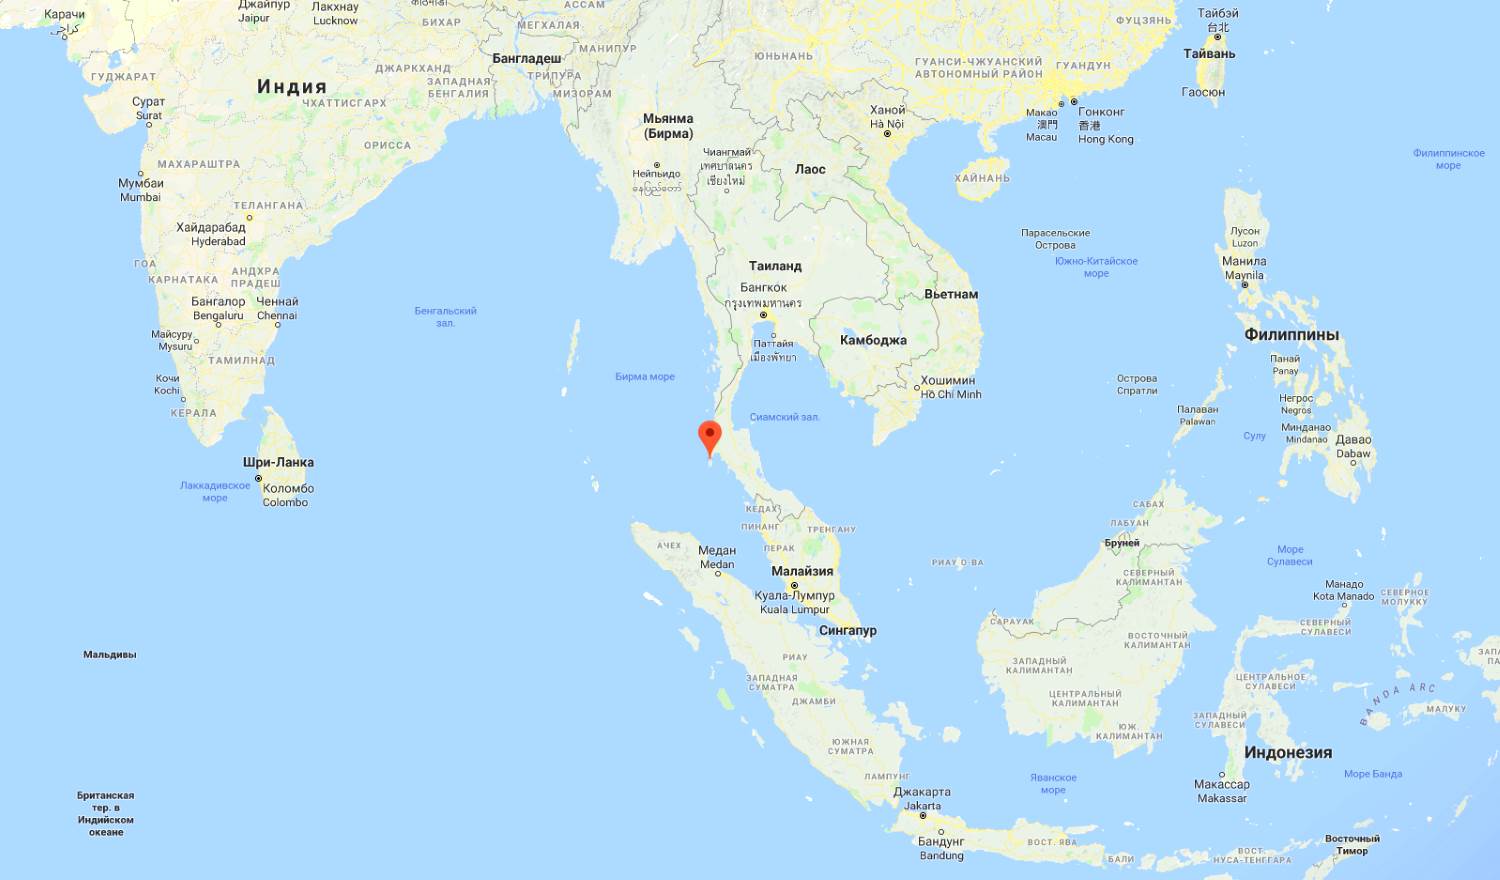 Phuket Island on the world map